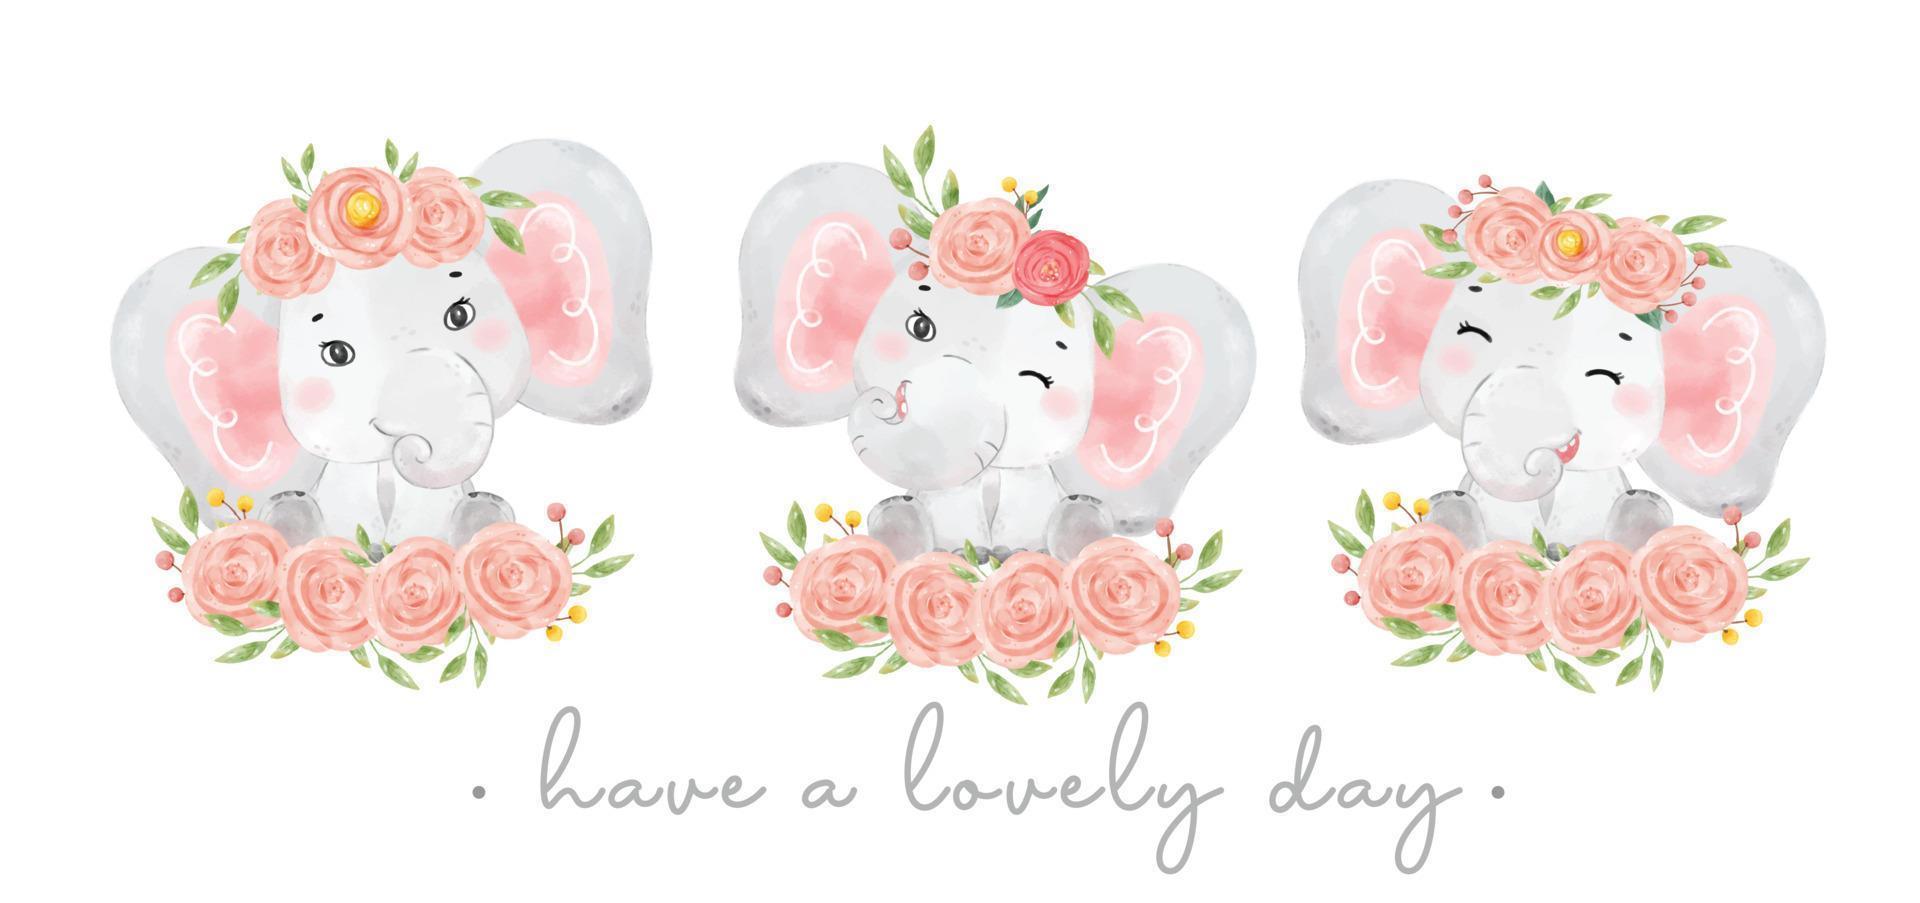 gruppo di tre carino dolce elefantino rosa ragazza adorabile sorriso seduto su mazzi di fiori, acquerello animale vivaio cartone animato han disegnato illustrazione vettore